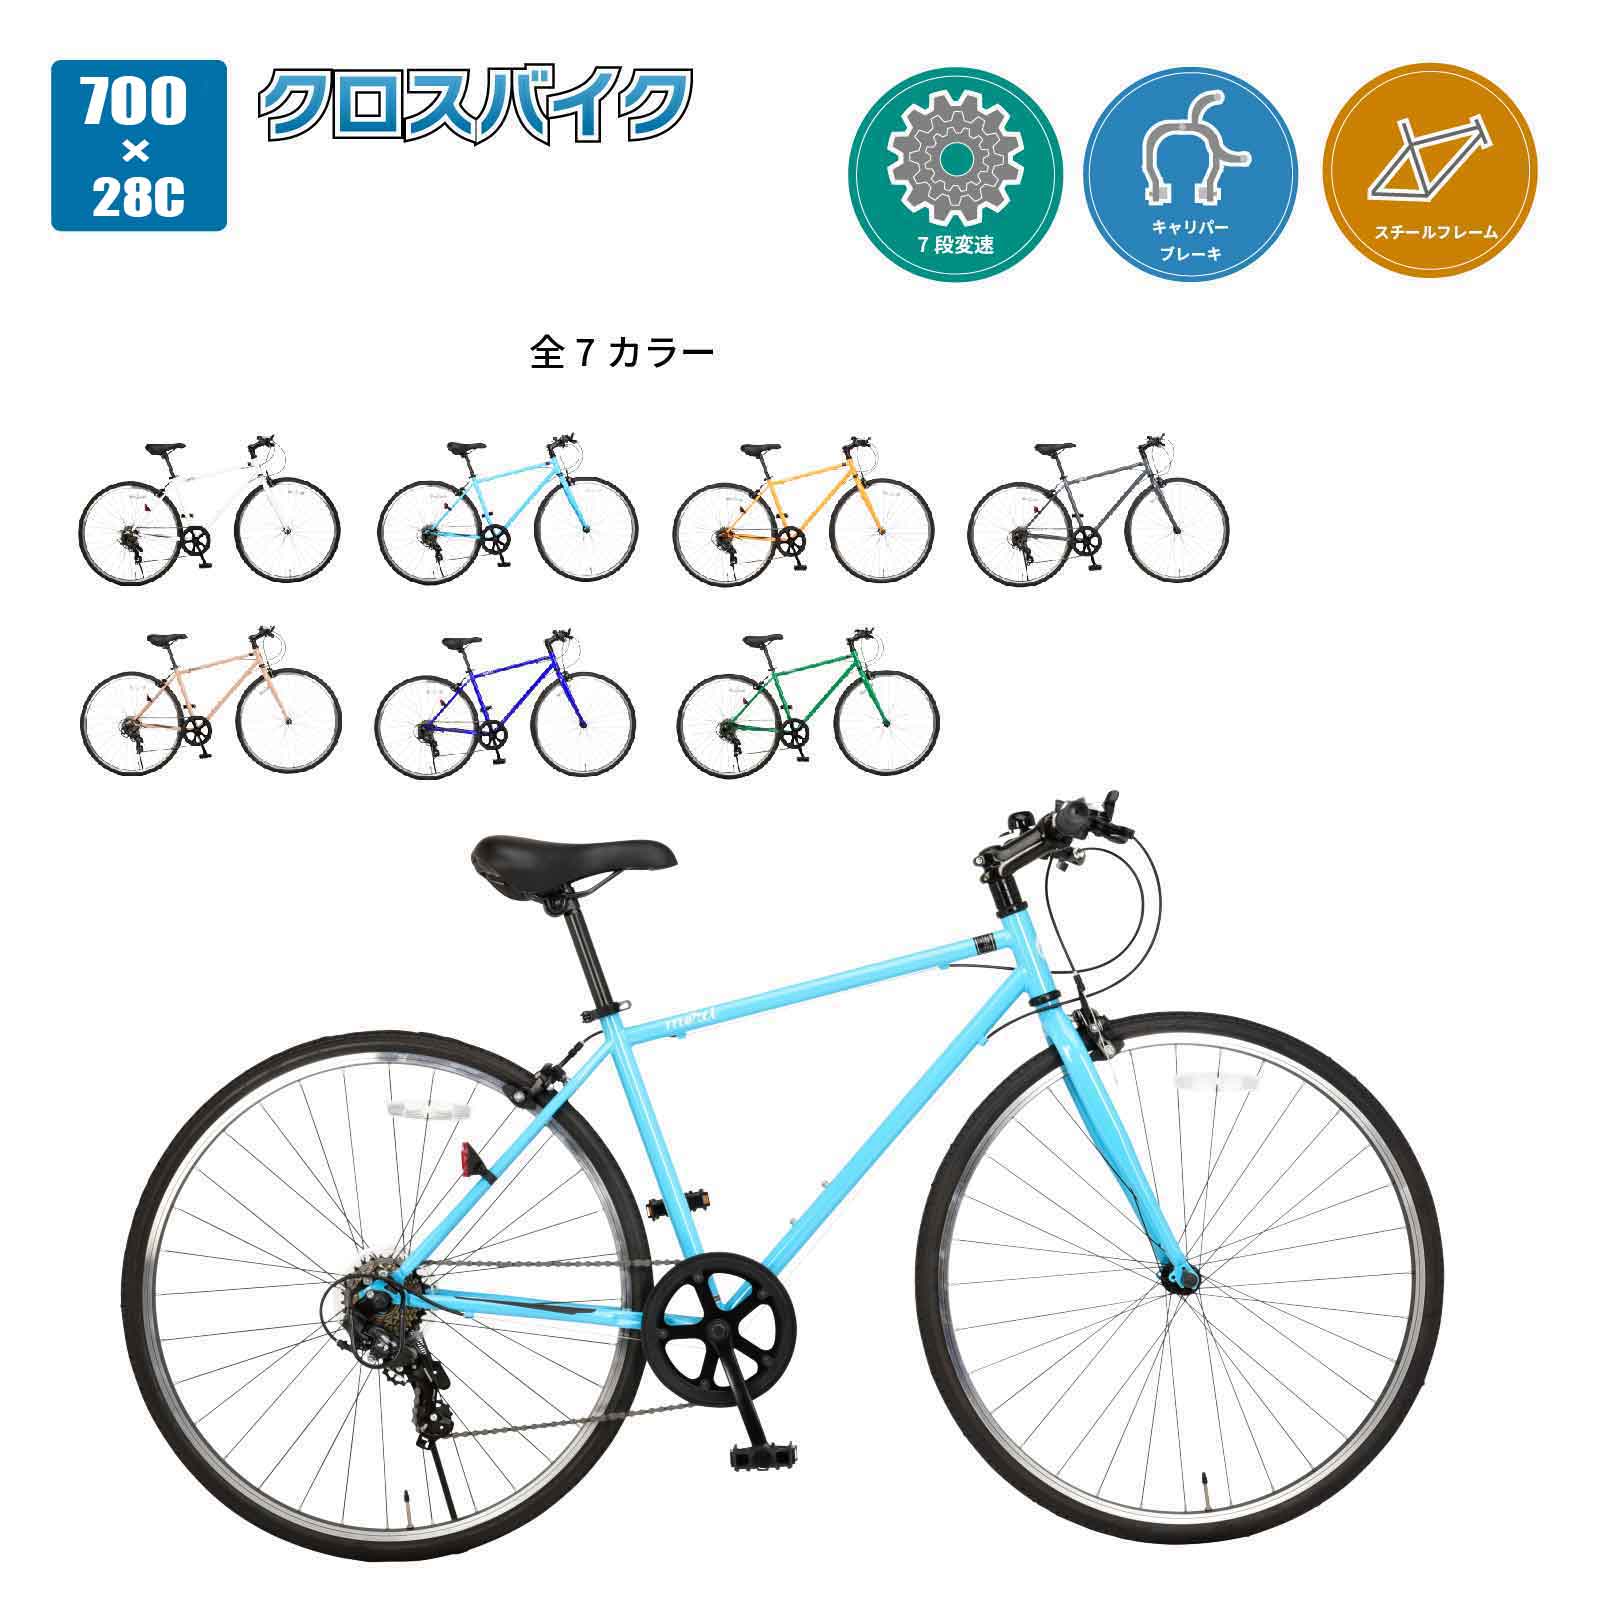 クロスバイク 自転車 完成品 700×28C シマノ7段変速 美和商事 MIWA MR077BKND メルシー700